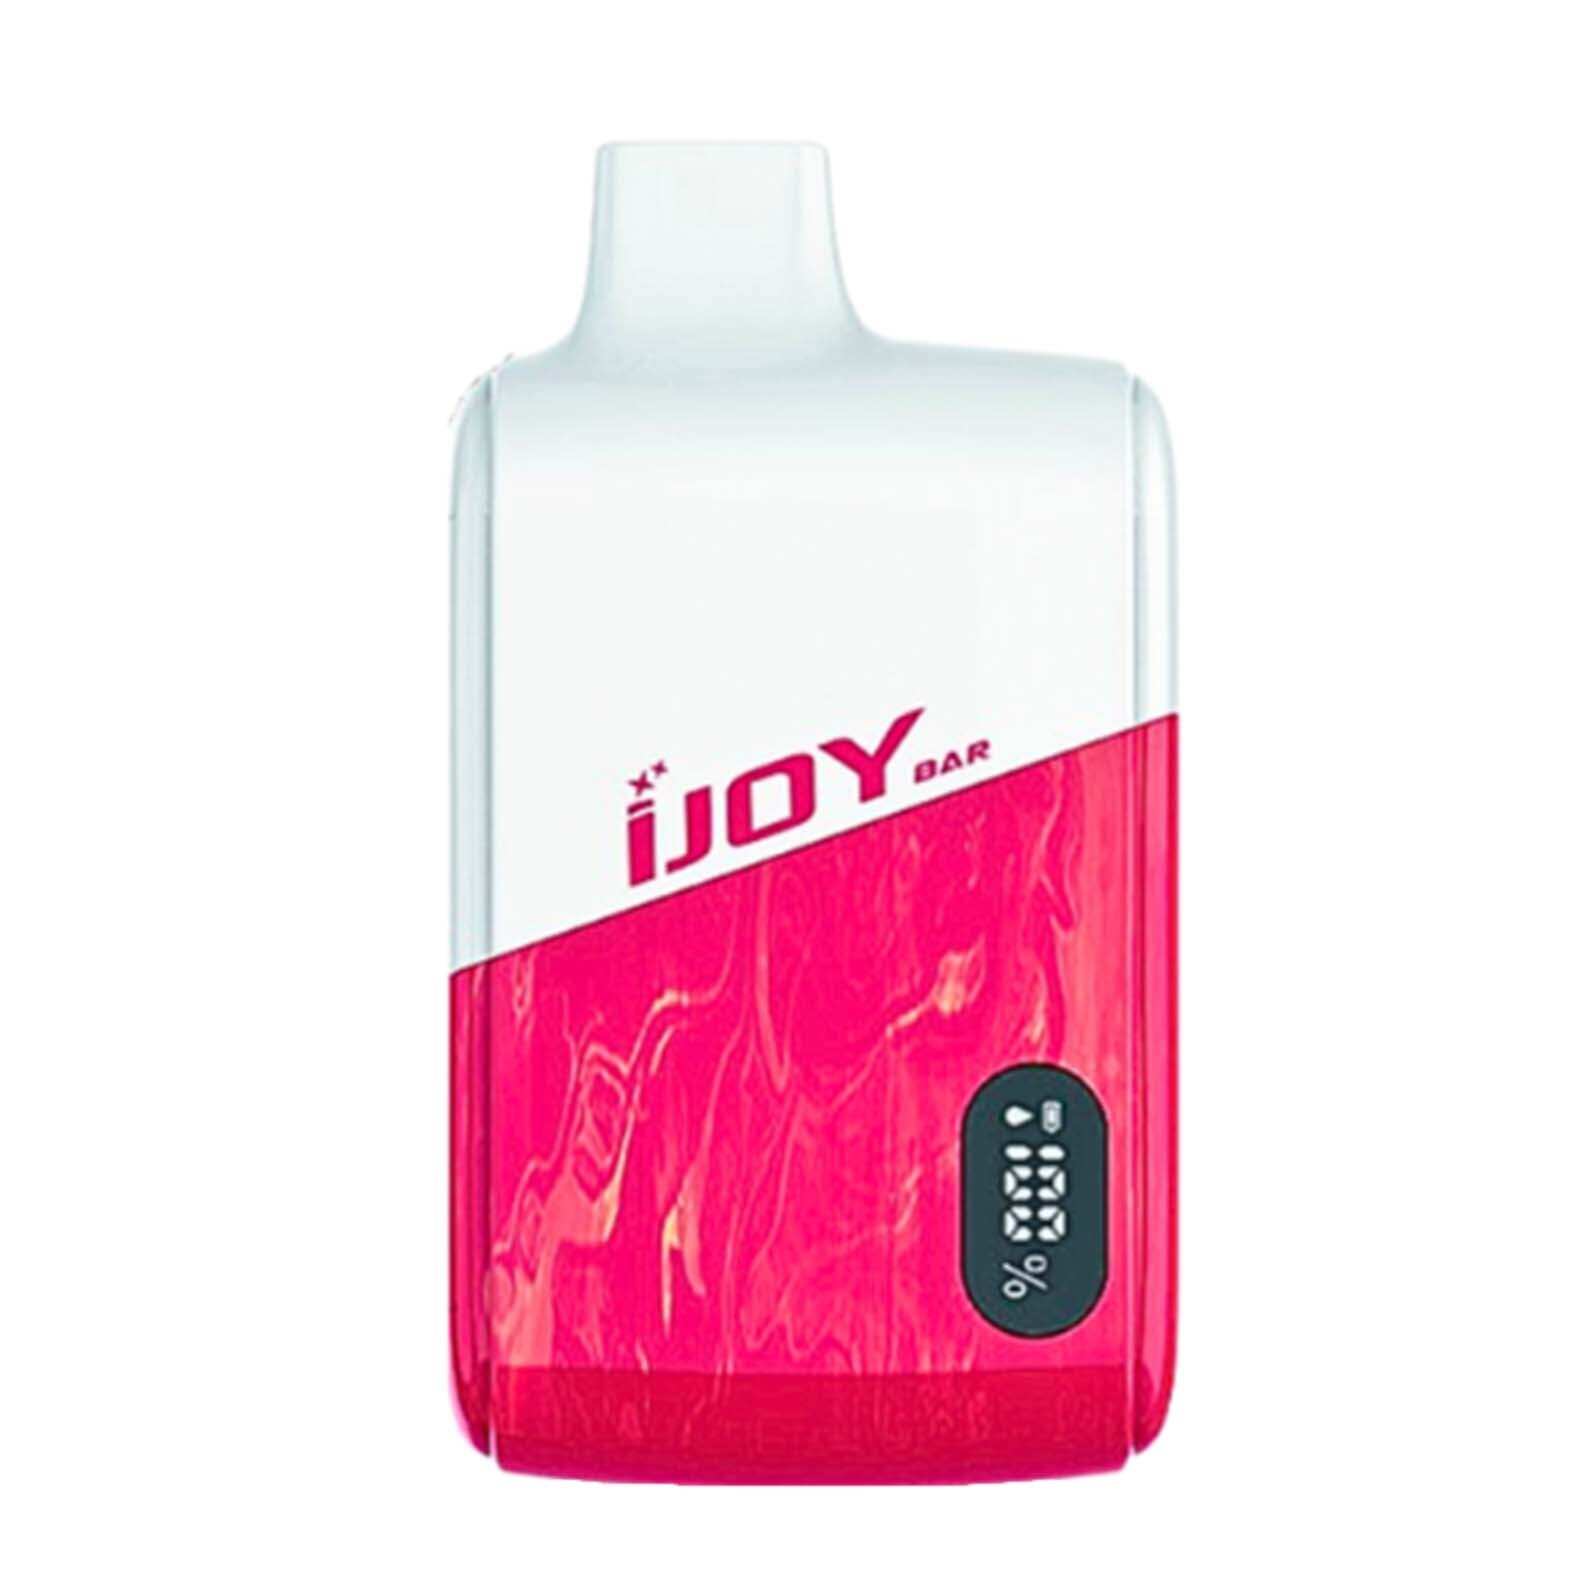 iJOY Bar Smart Vape | 8000 Puffs